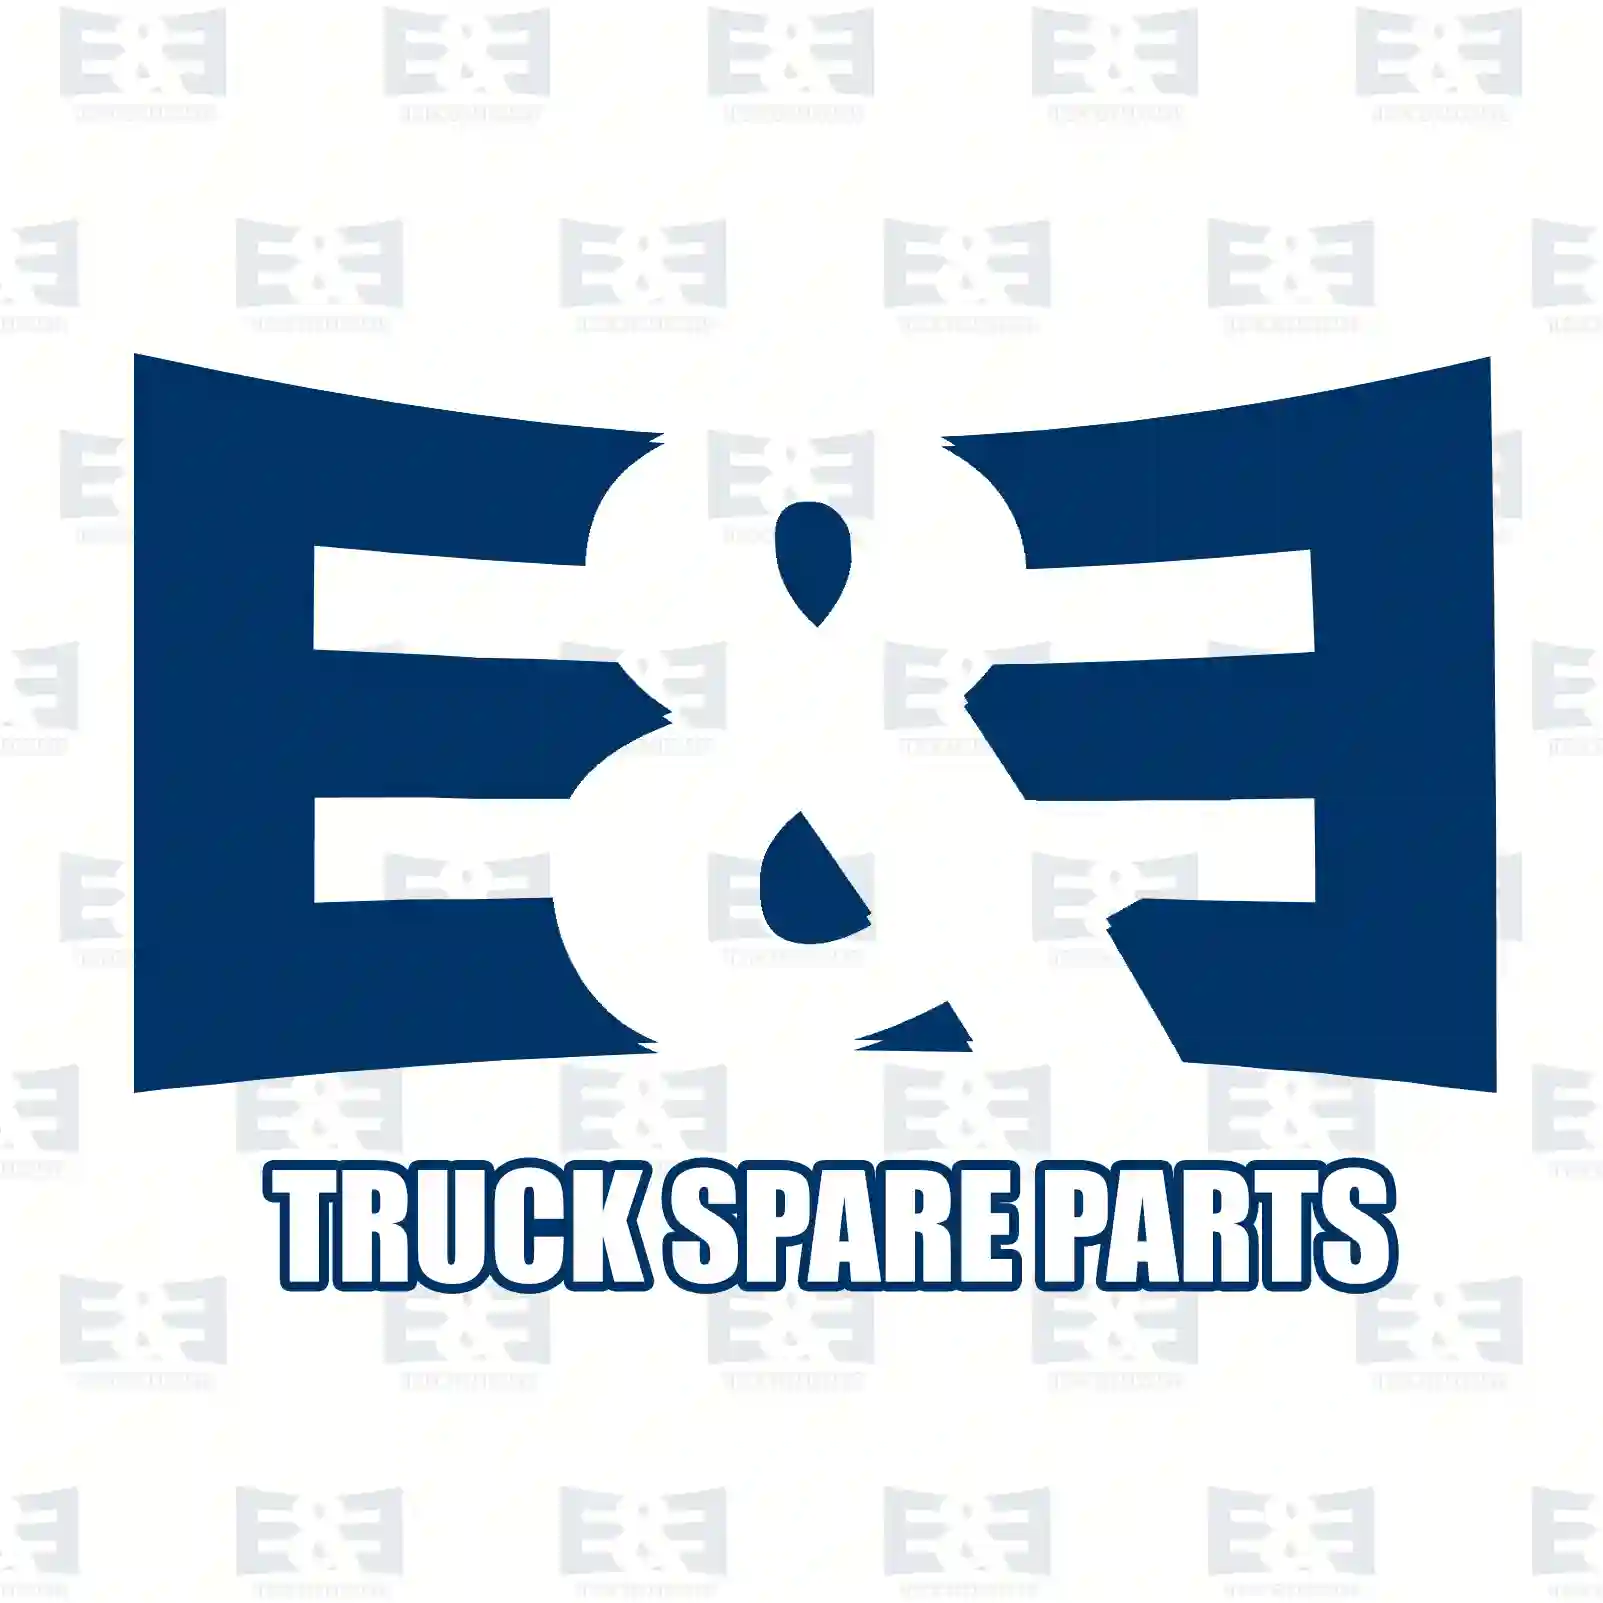 Oil seal, 2E2284803, 0109970147, 0109975347, 0109978647, ||  2E2284803 E&E Truck Spare Parts | Truck Spare Parts, Auotomotive Spare Parts Oil seal, 2E2284803, 0109970147, 0109975347, 0109978647, ||  2E2284803 E&E Truck Spare Parts | Truck Spare Parts, Auotomotive Spare Parts